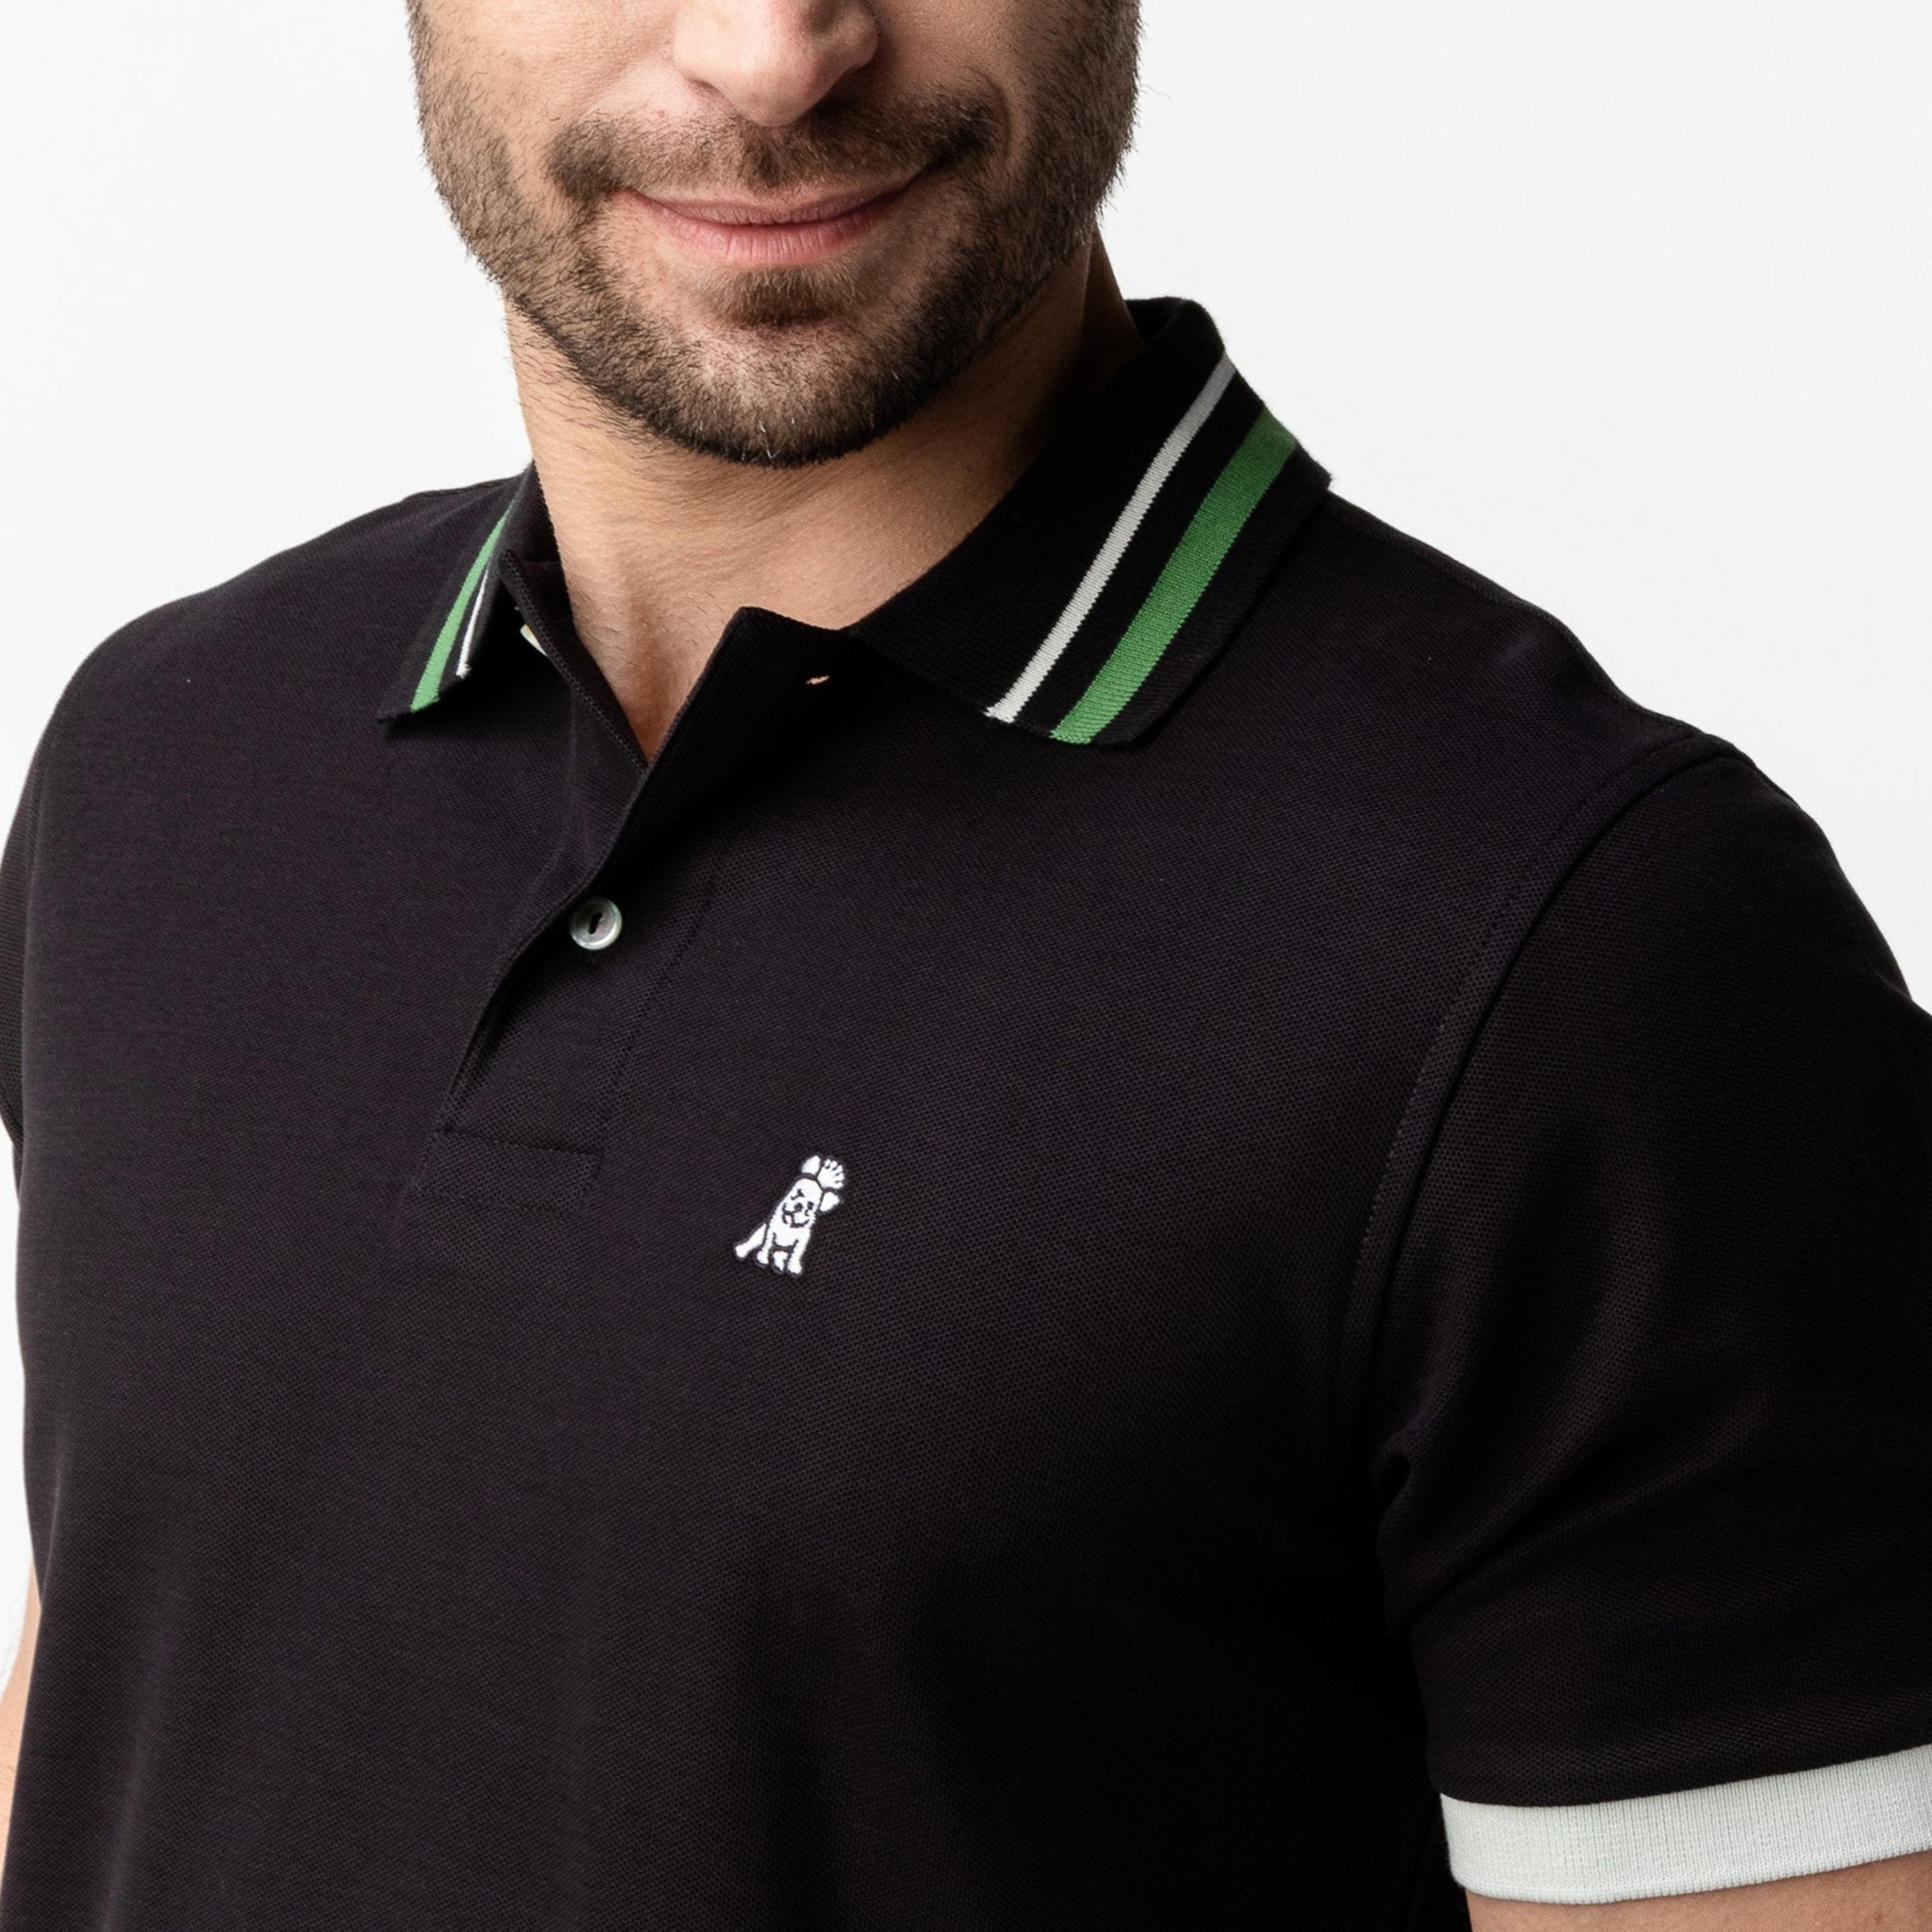 Men's Green Striped Accents Piqué Polo Shirt - JAMES BARK